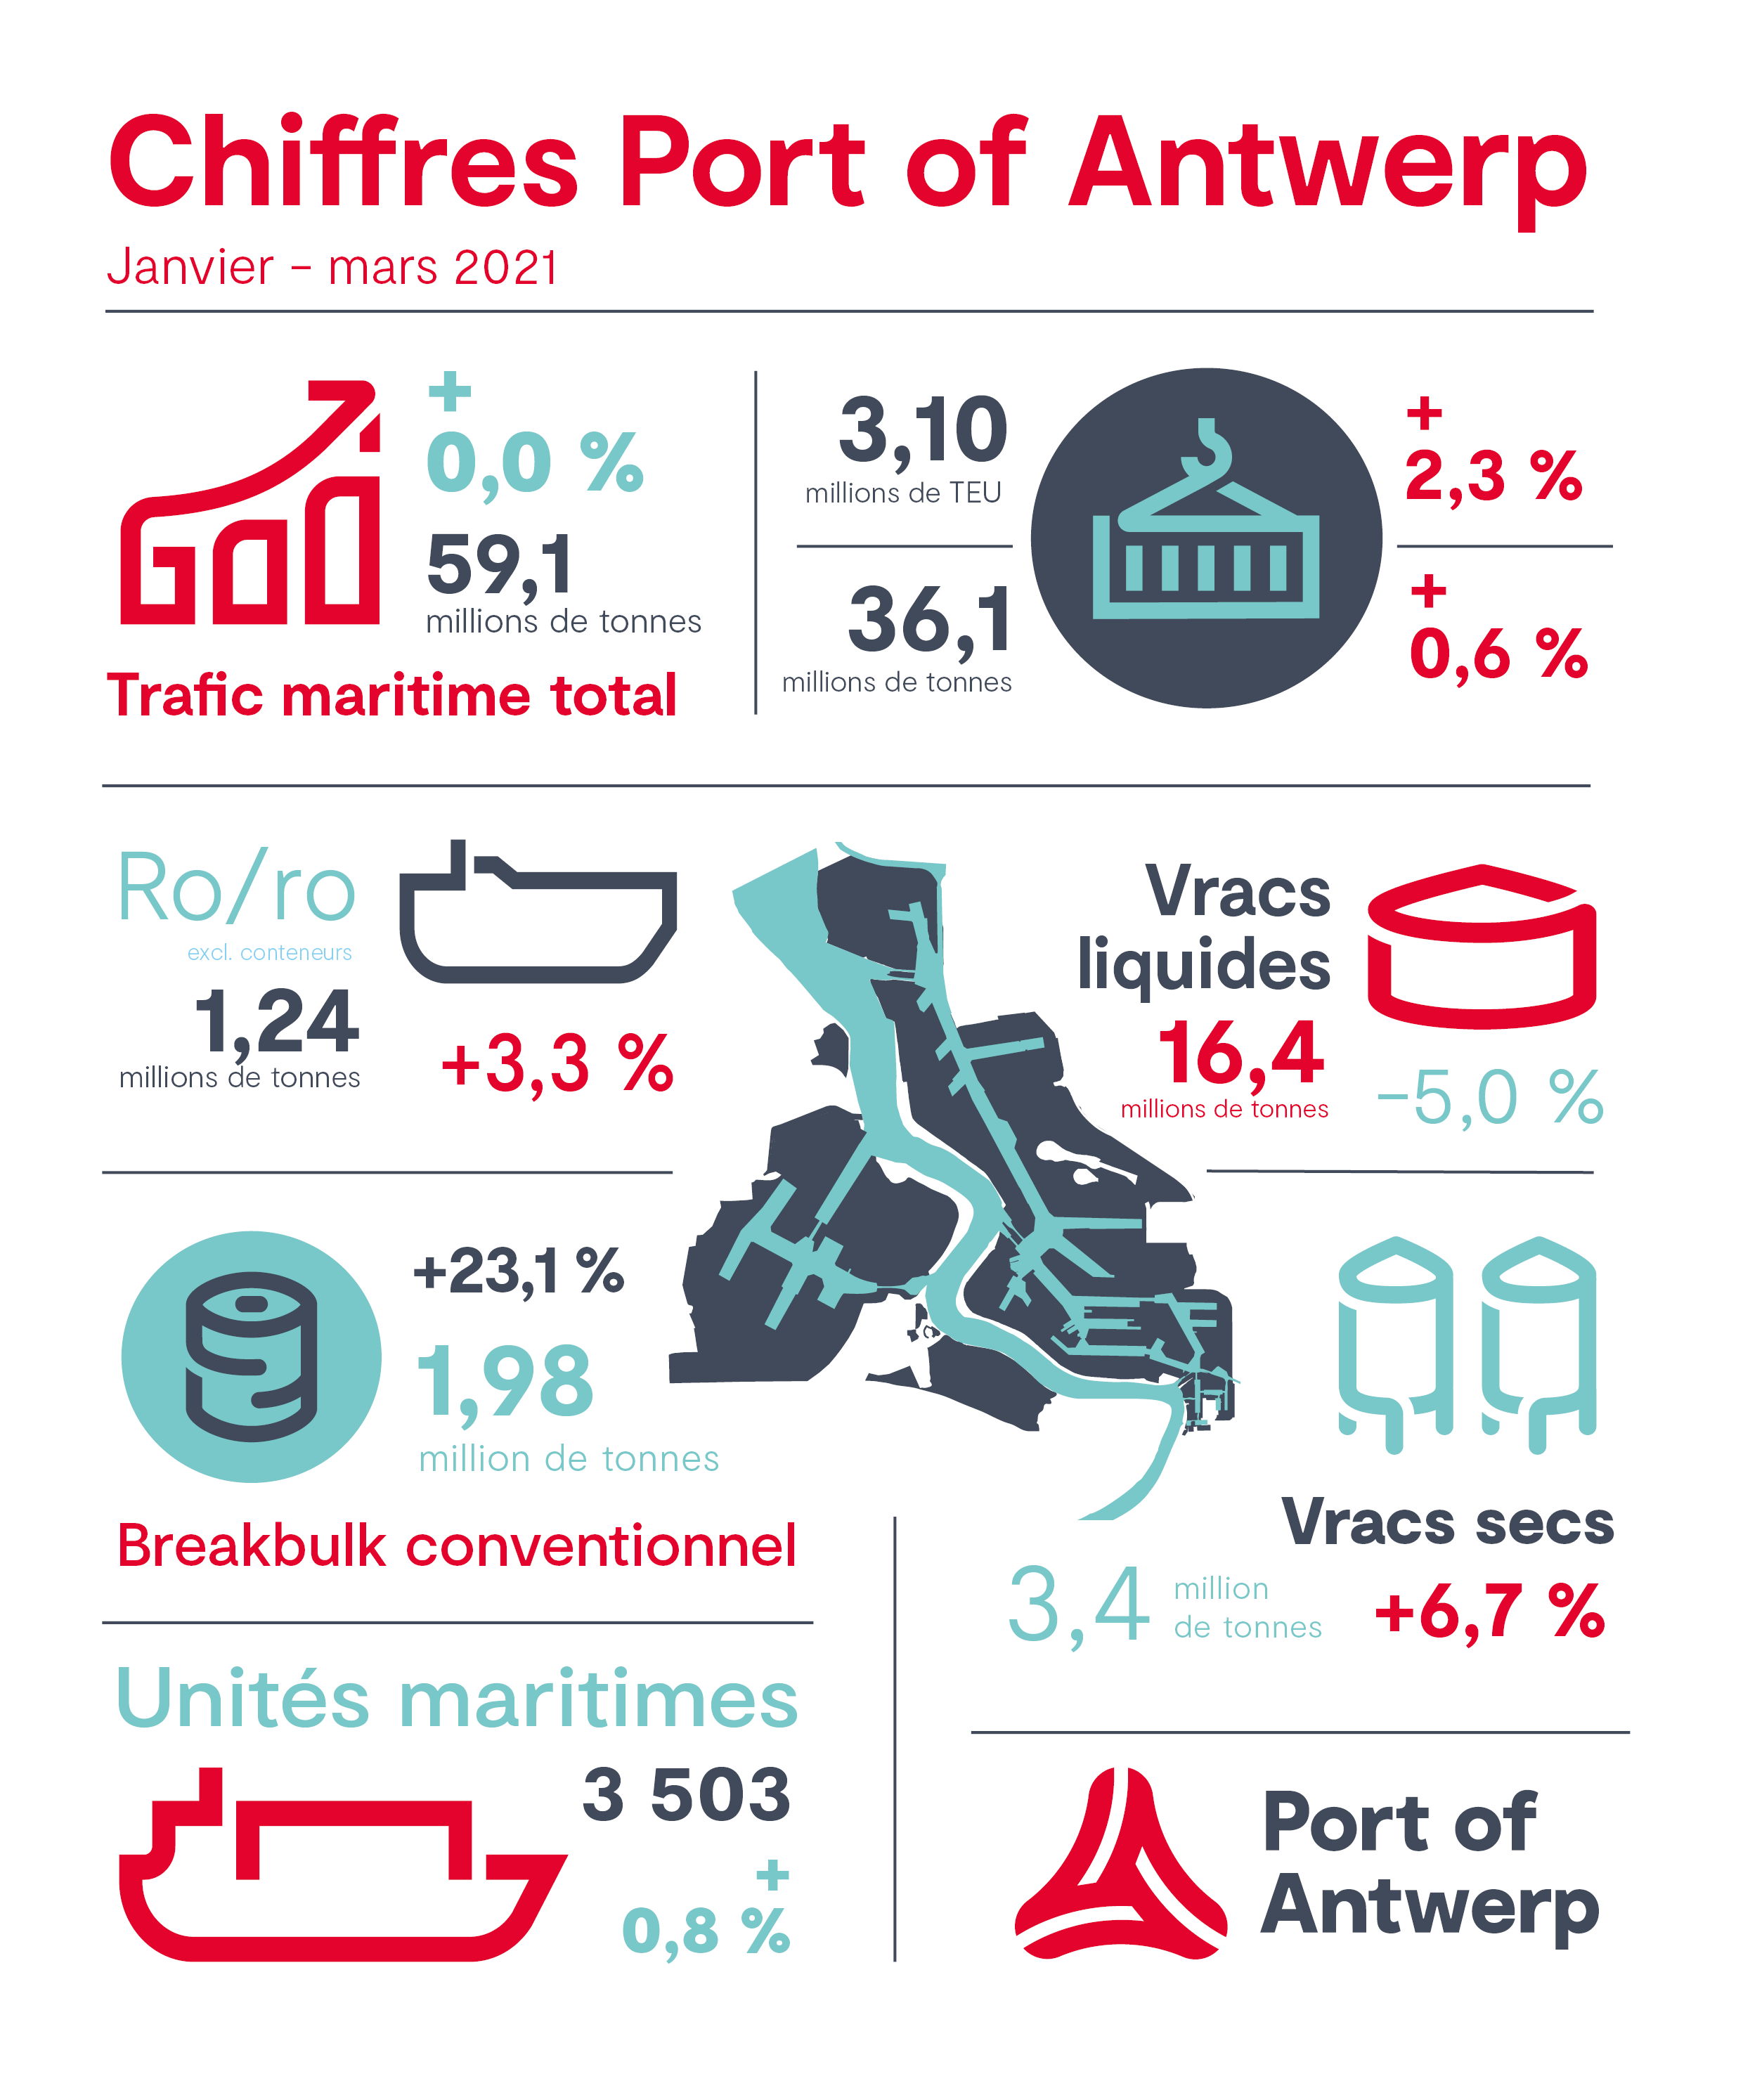 Chiffres Port of Antwerp Q1 2021